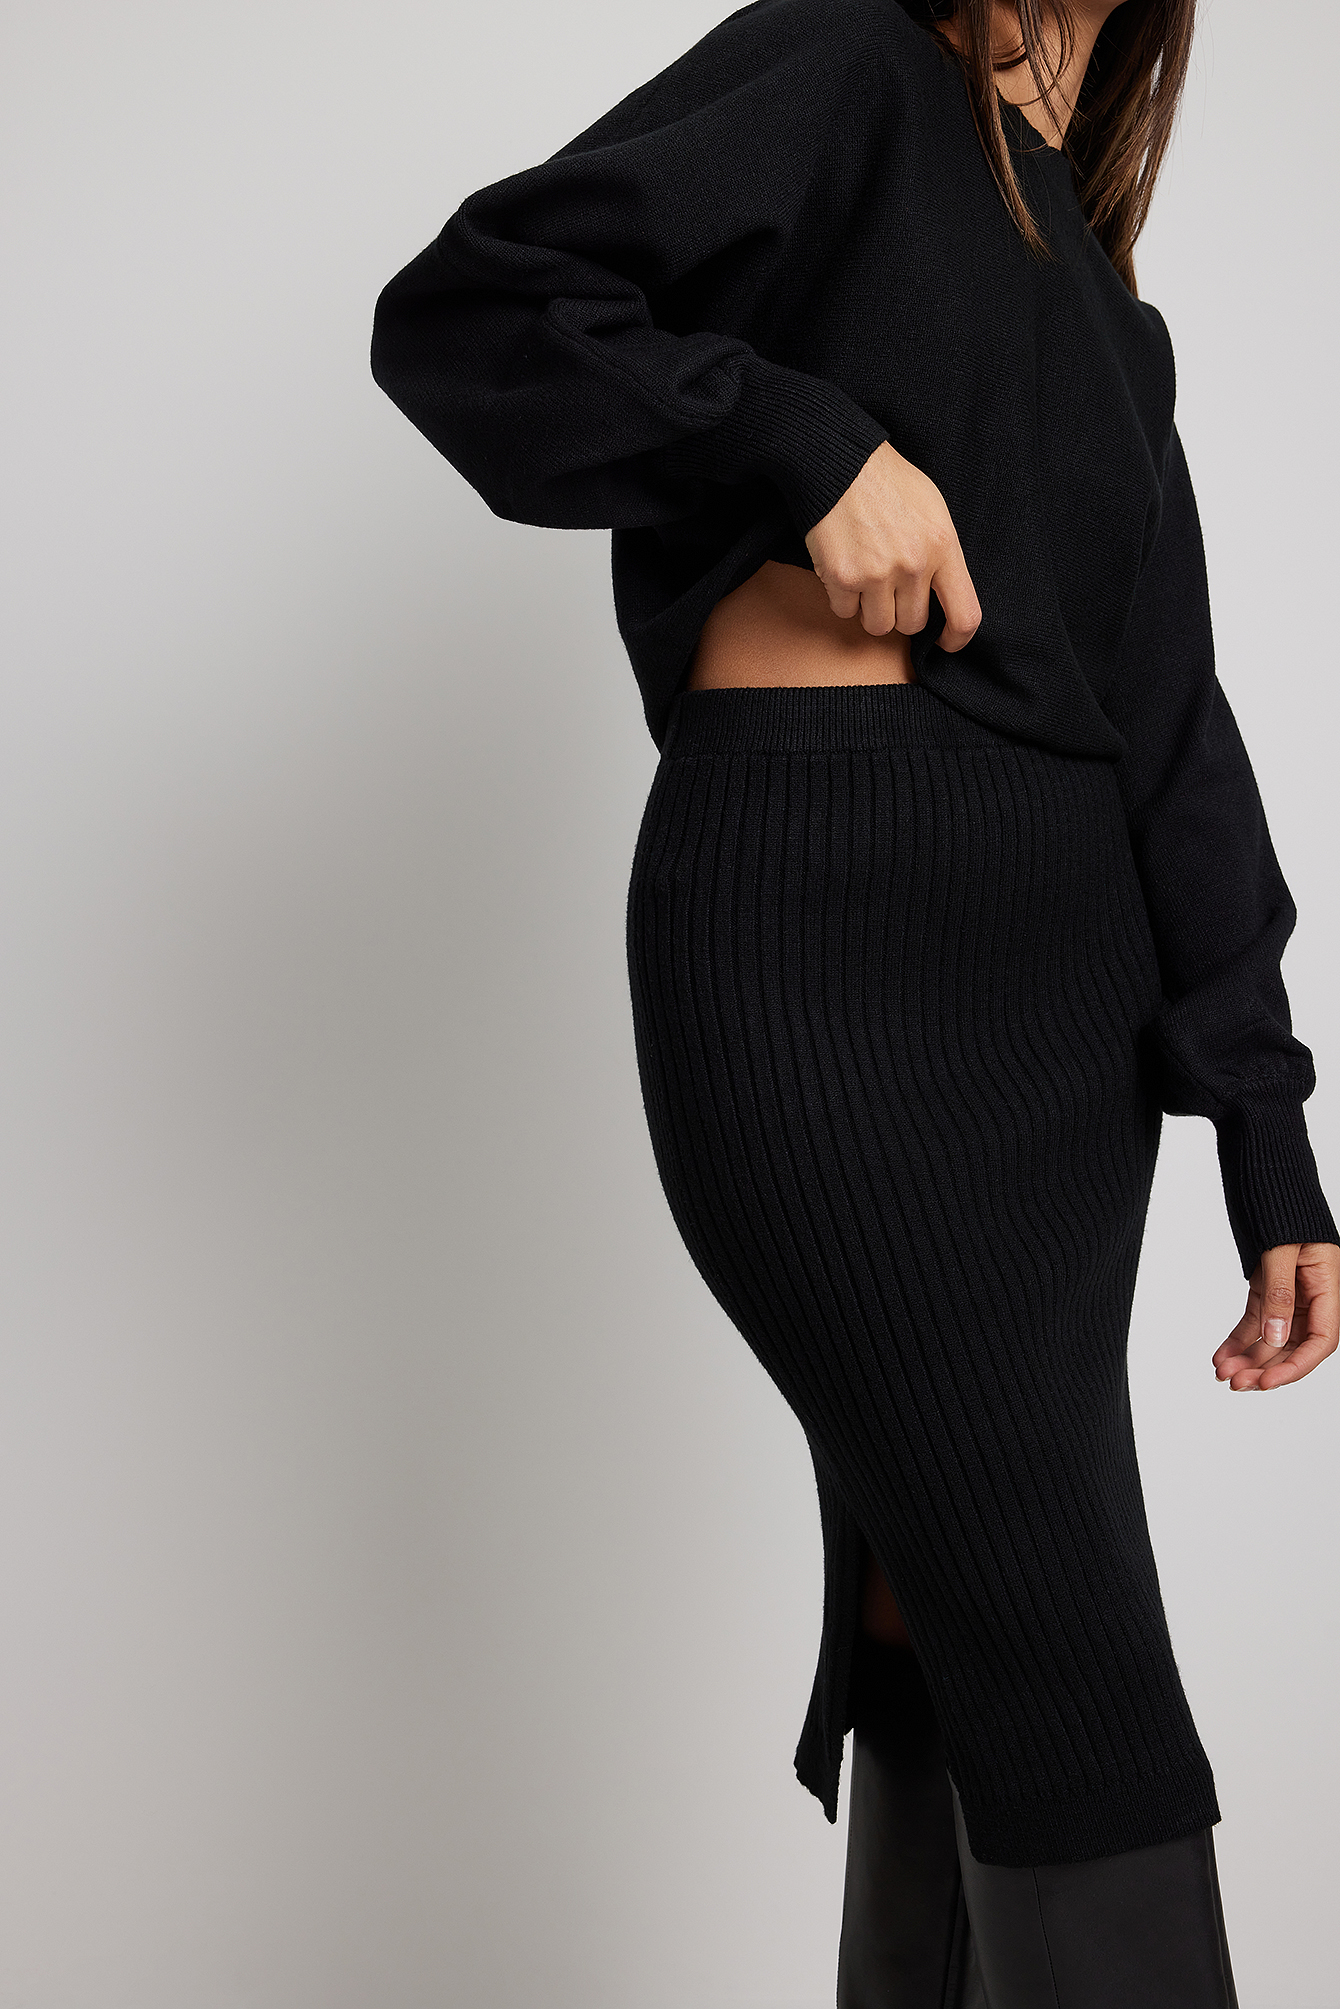 Black Rib Knitted Skirt